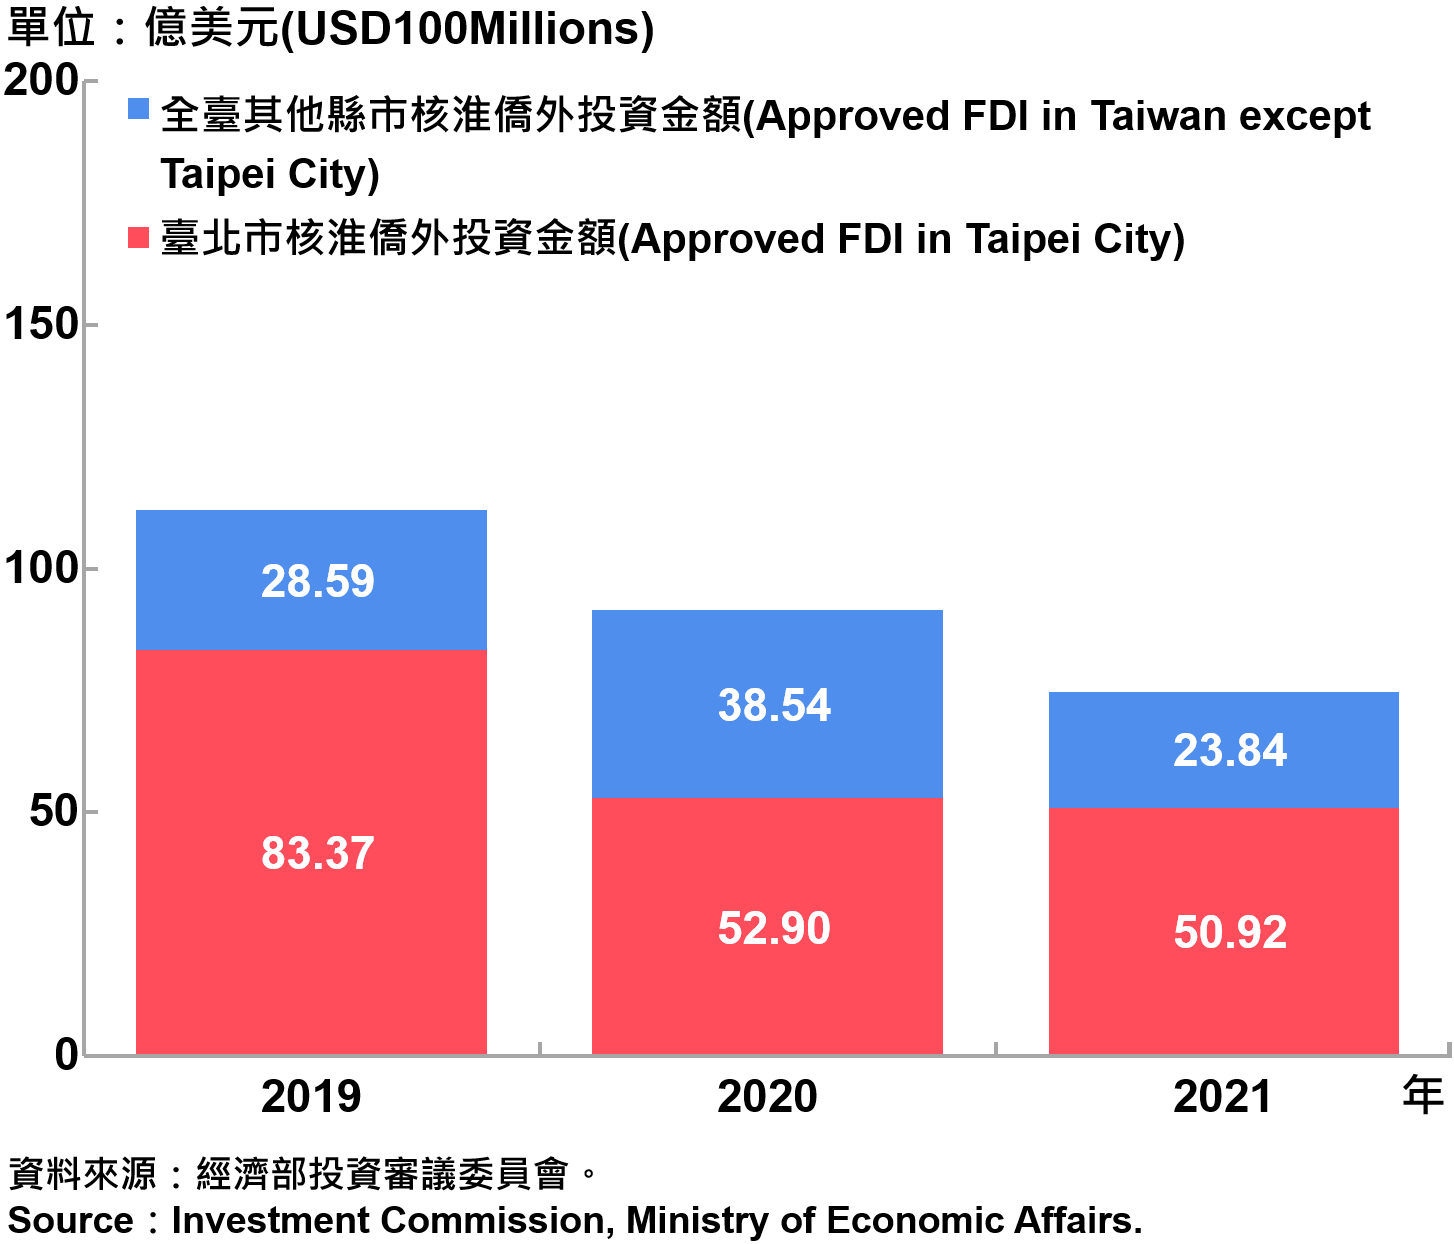 臺北市與全國僑外投資金額—2021 Foreign Direct Investment（FDI）in Taipei City and Taiwan—2021